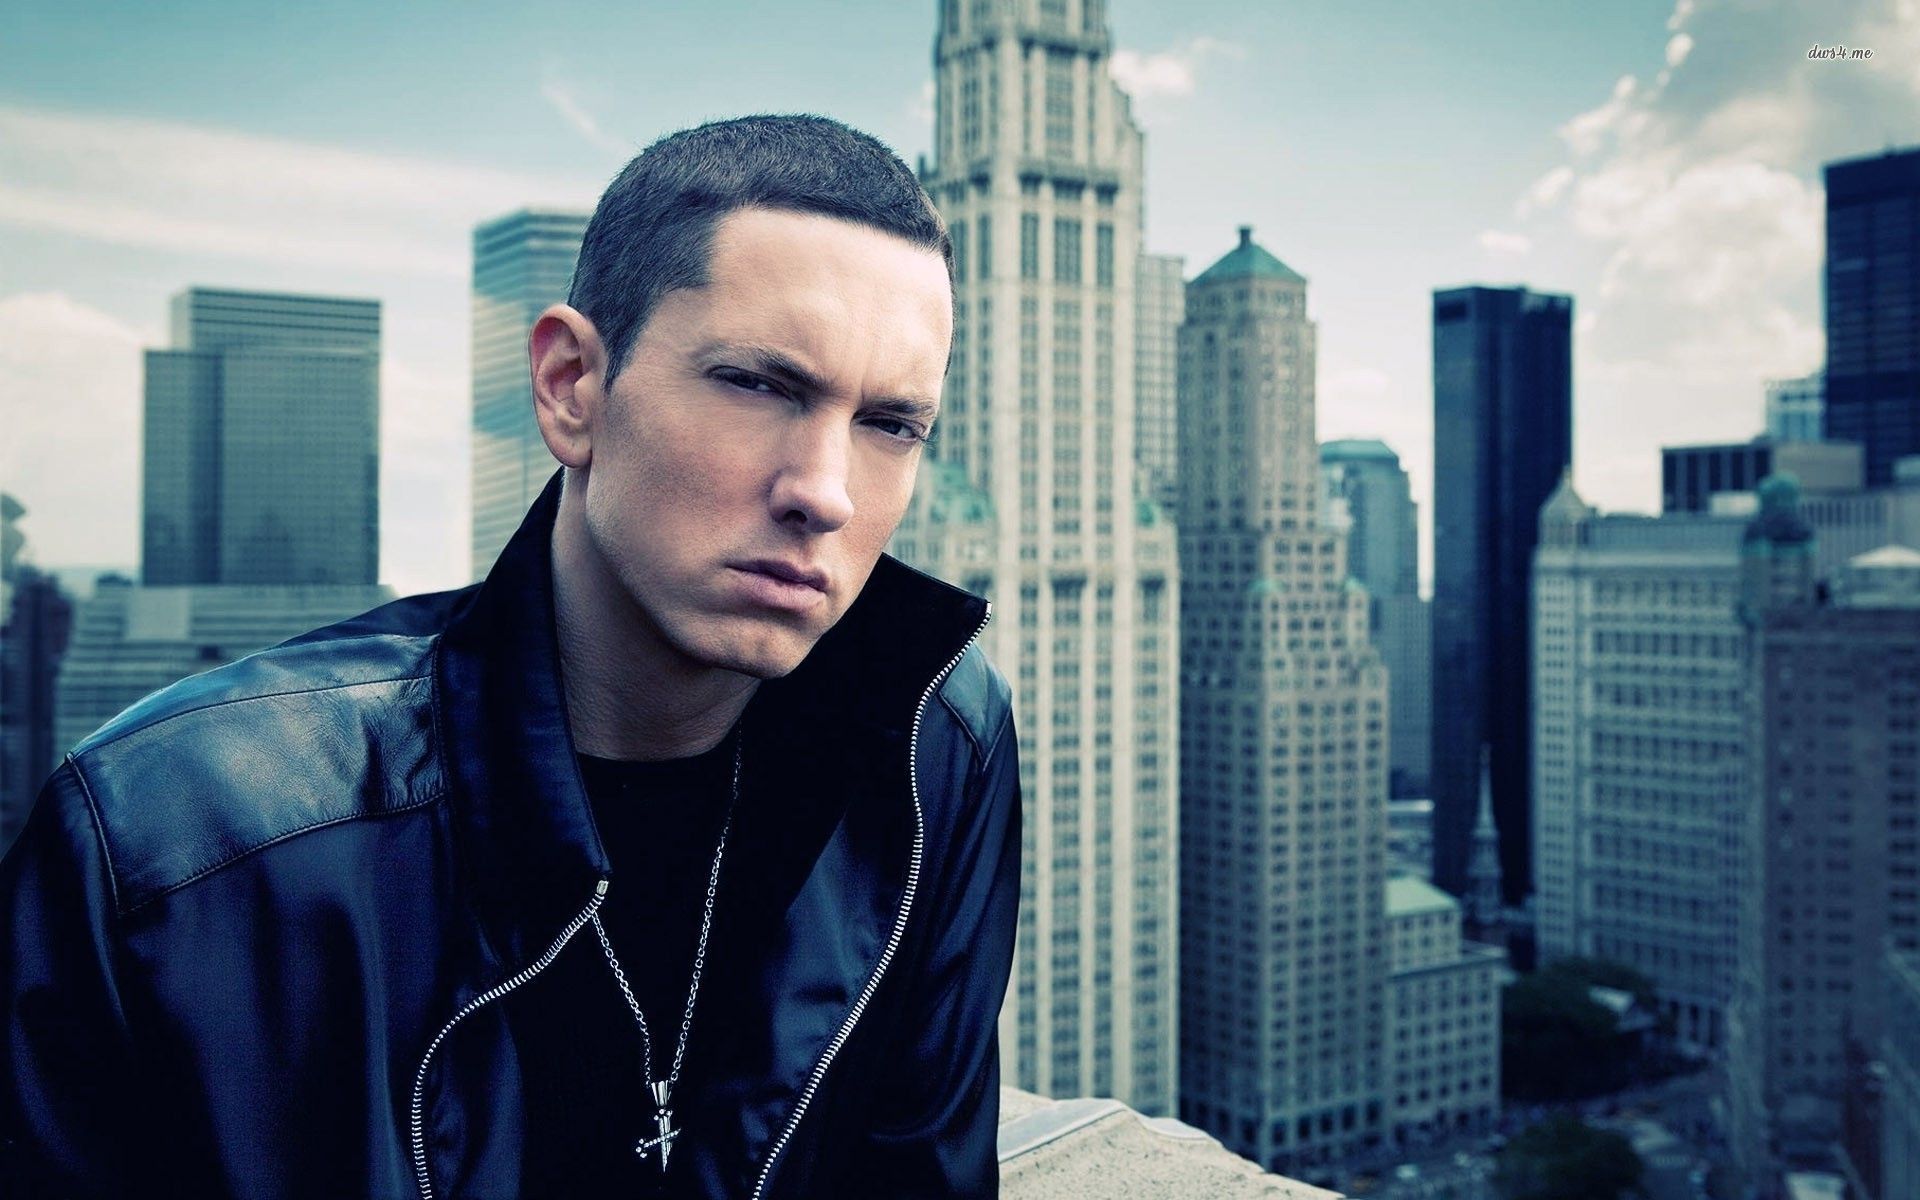 Eminem Role Model Mp3 Download Free